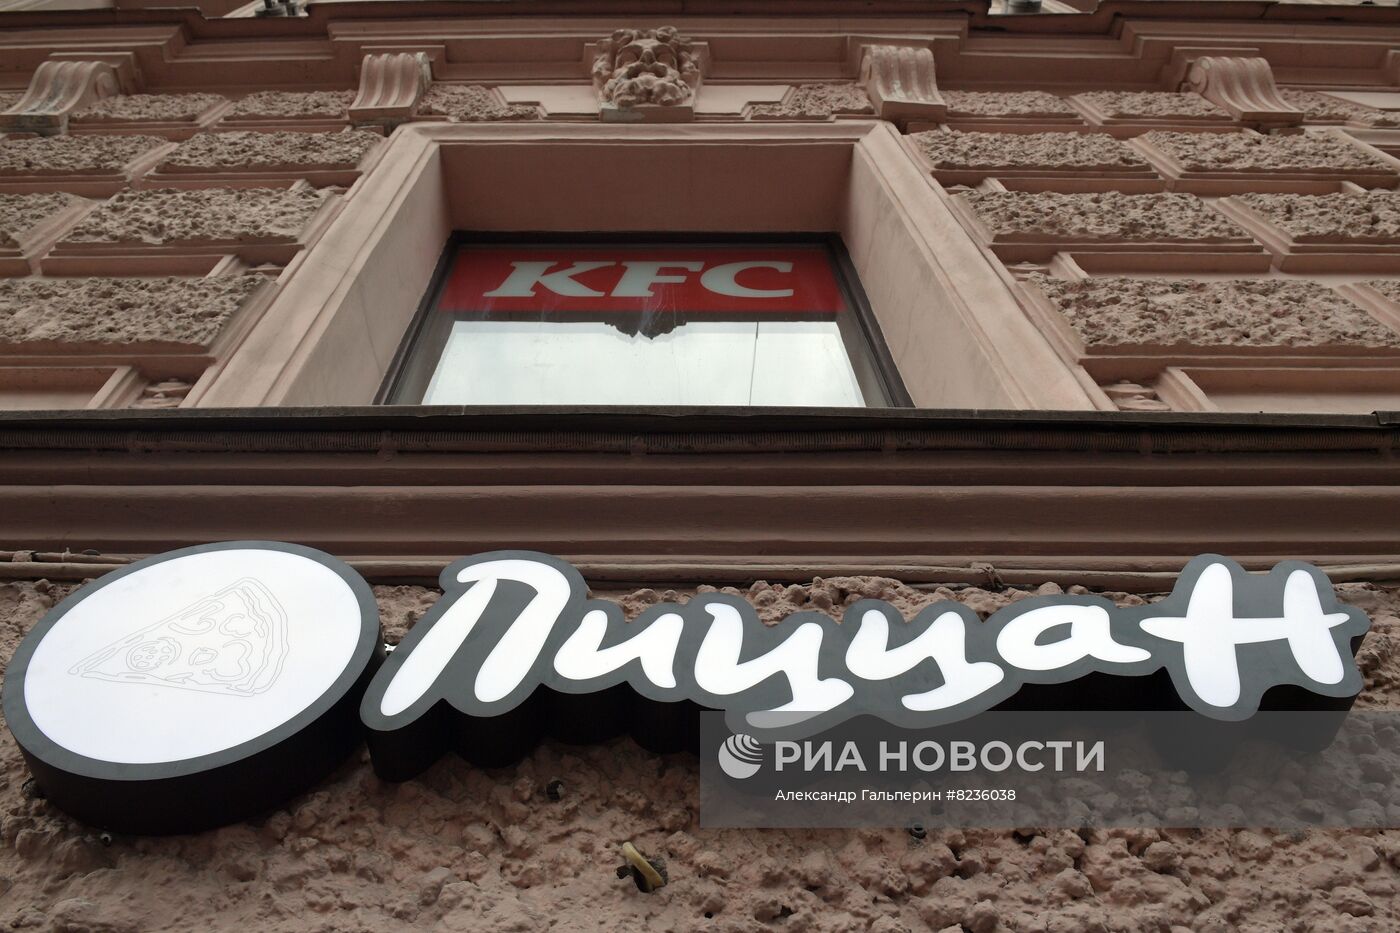 Рестораны Pizza Hut в Петербурге сменили вывески